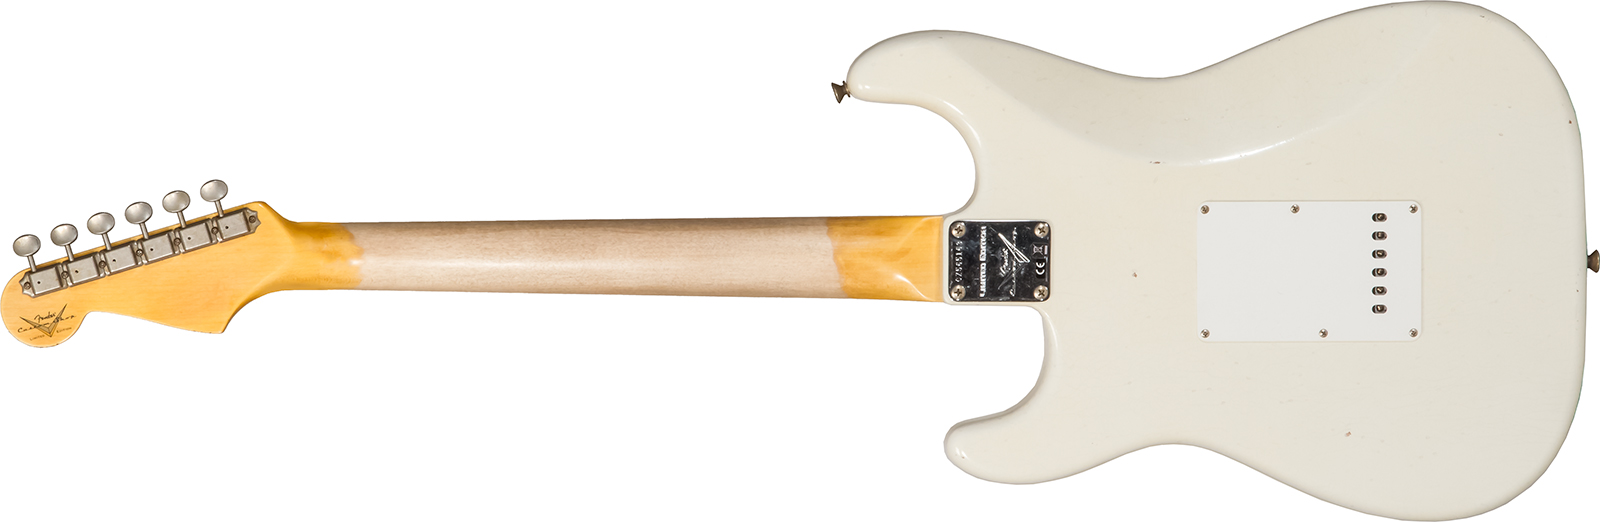 Fender Custom Shop Strat 1962/63 3s Trem Rw #cz565163 - Journeyman Relic Olympic White - Guitare Électrique Forme Str - Variation 1